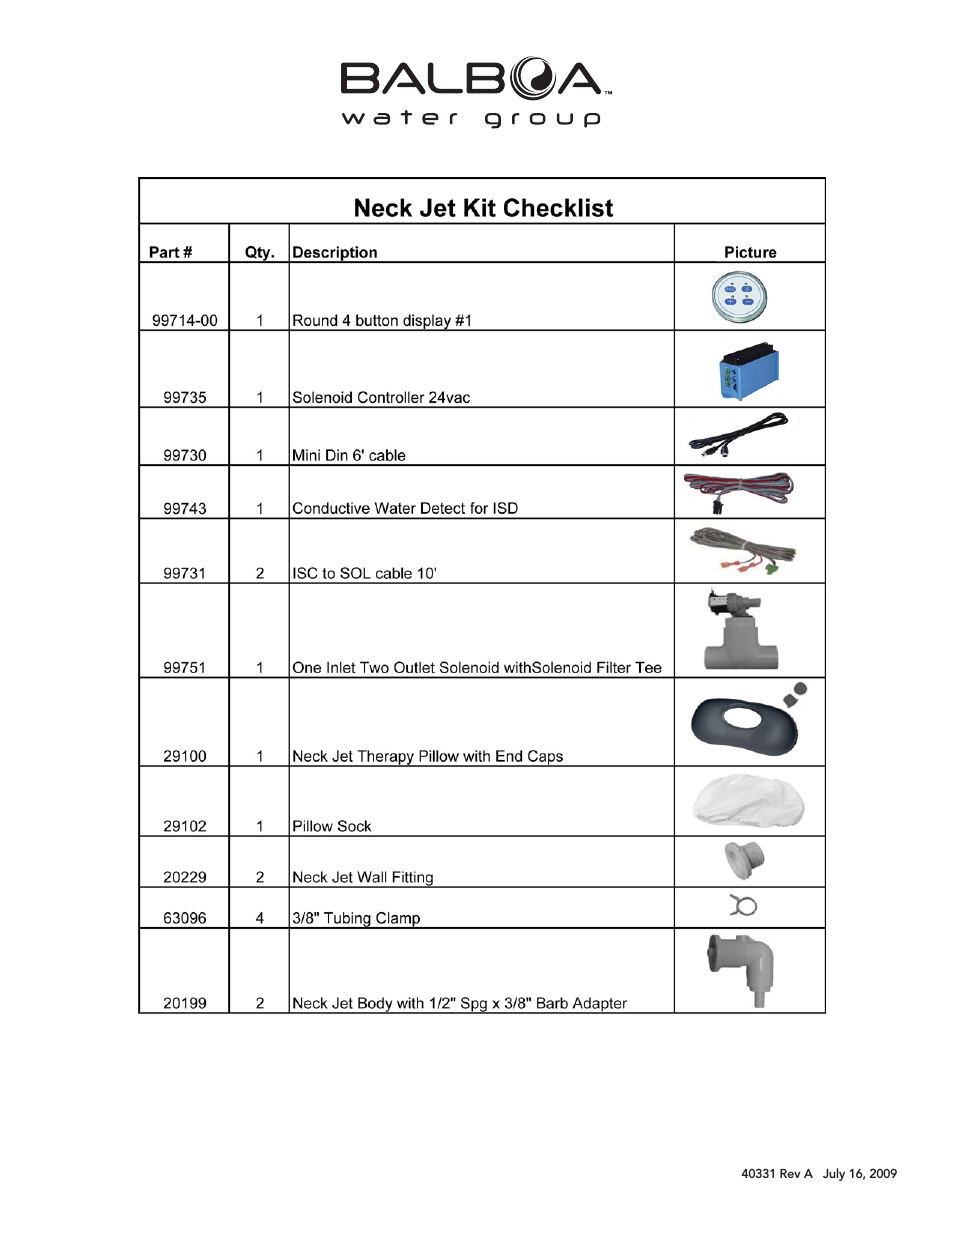 Neck Jet System Kit with Instructions